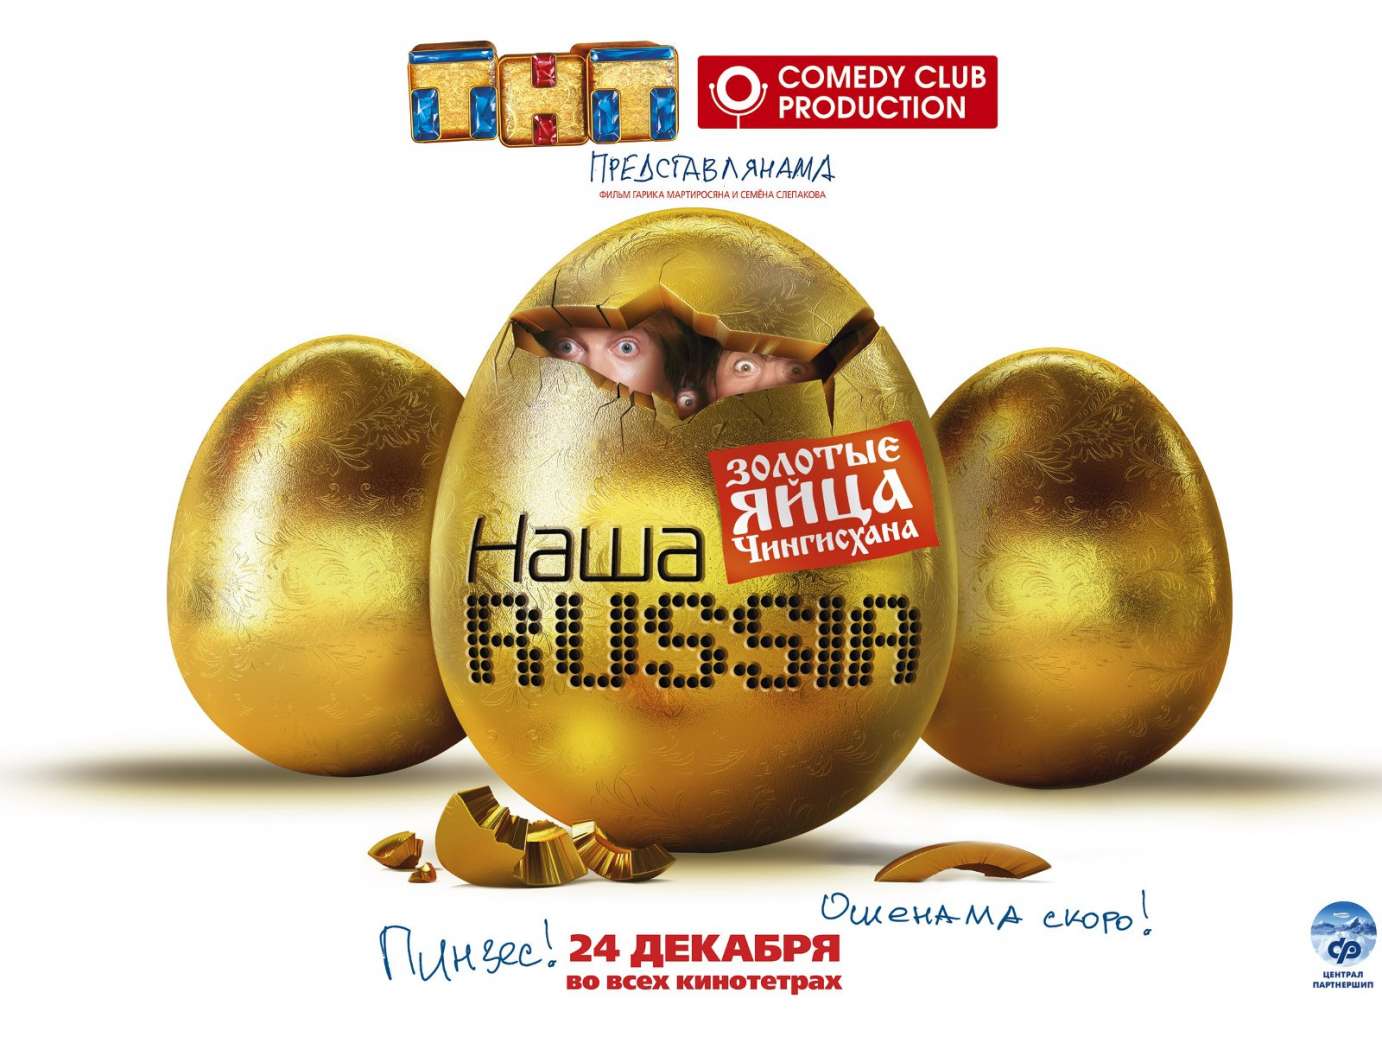 Наша Russia: Золотые яйца Чингисхана 2010 (CAMrip) скачать бесплатно.